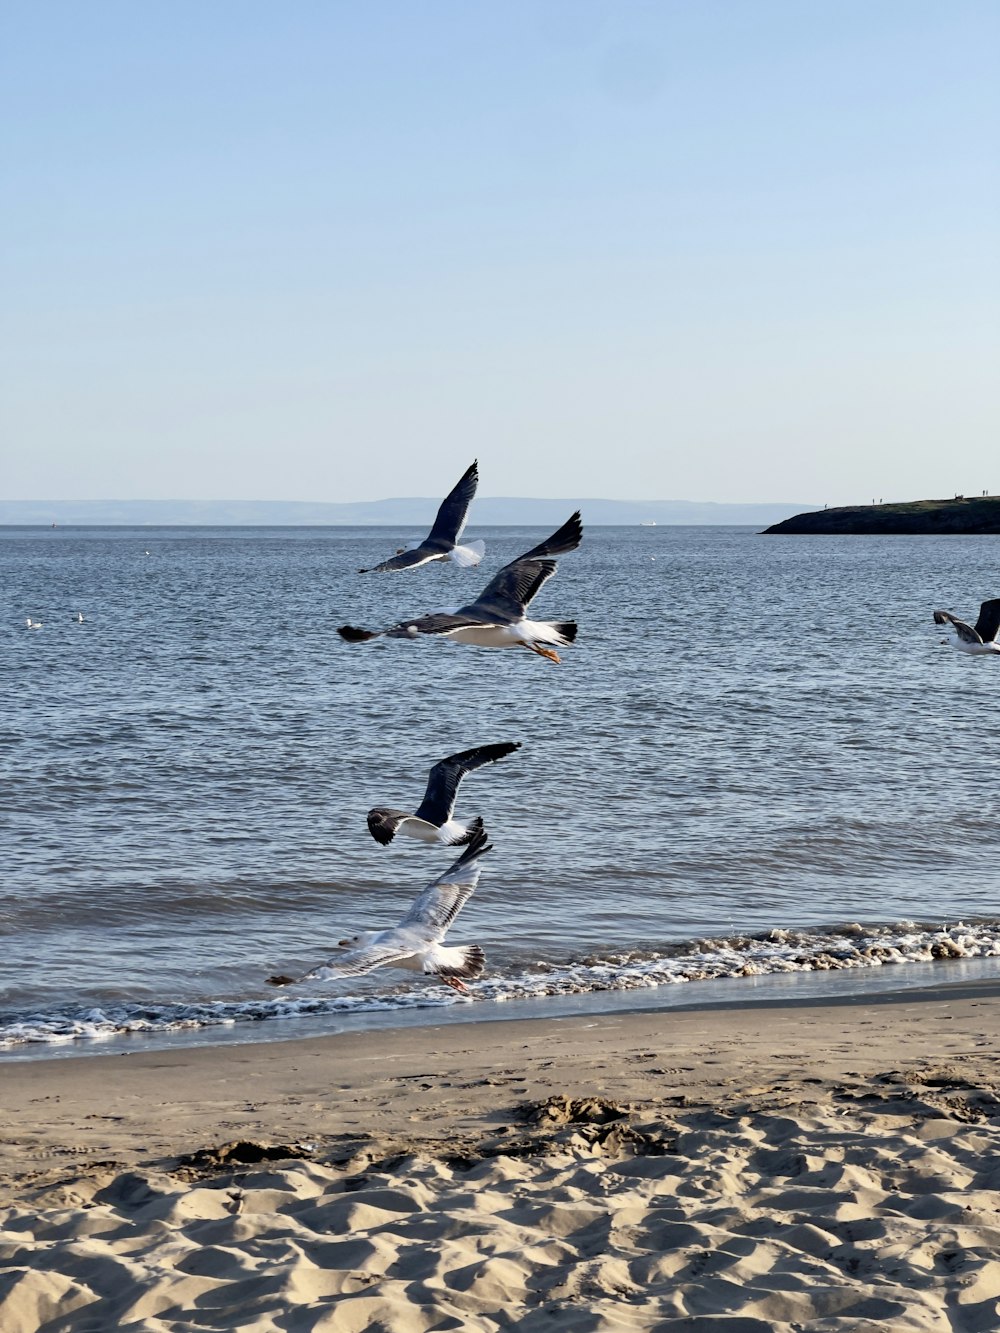 Una bandada de pájaros volando sobre una playa de arena